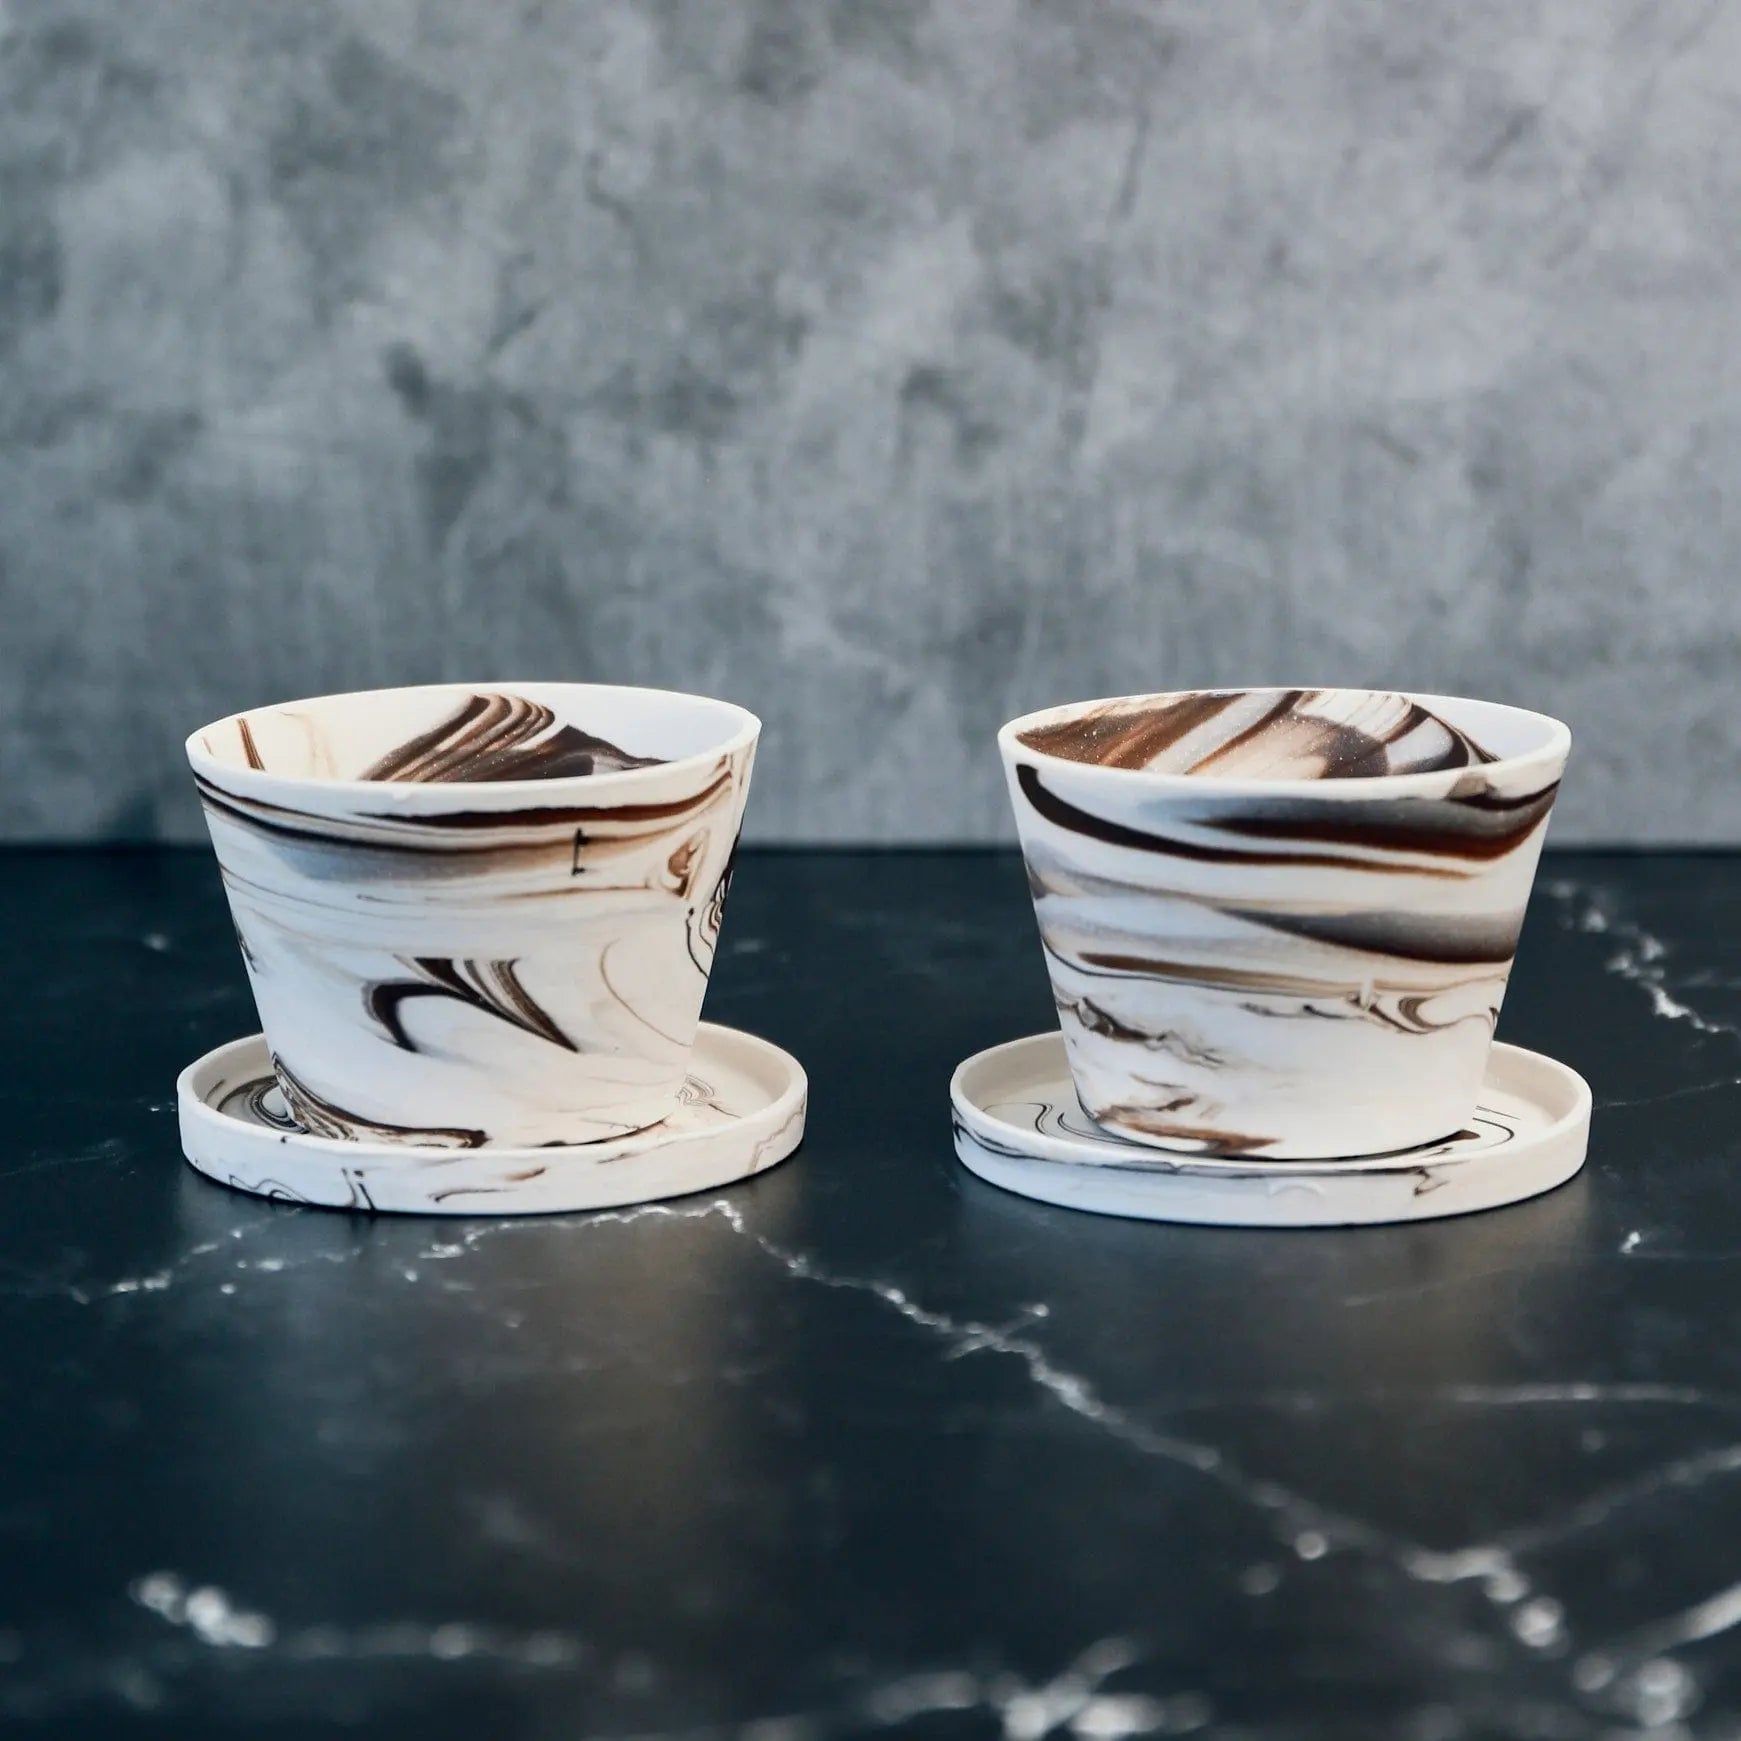 Espresso cups Espresso & cream Handcrafted Ceramic Espresso Cup Set (2) - Pop of Modern